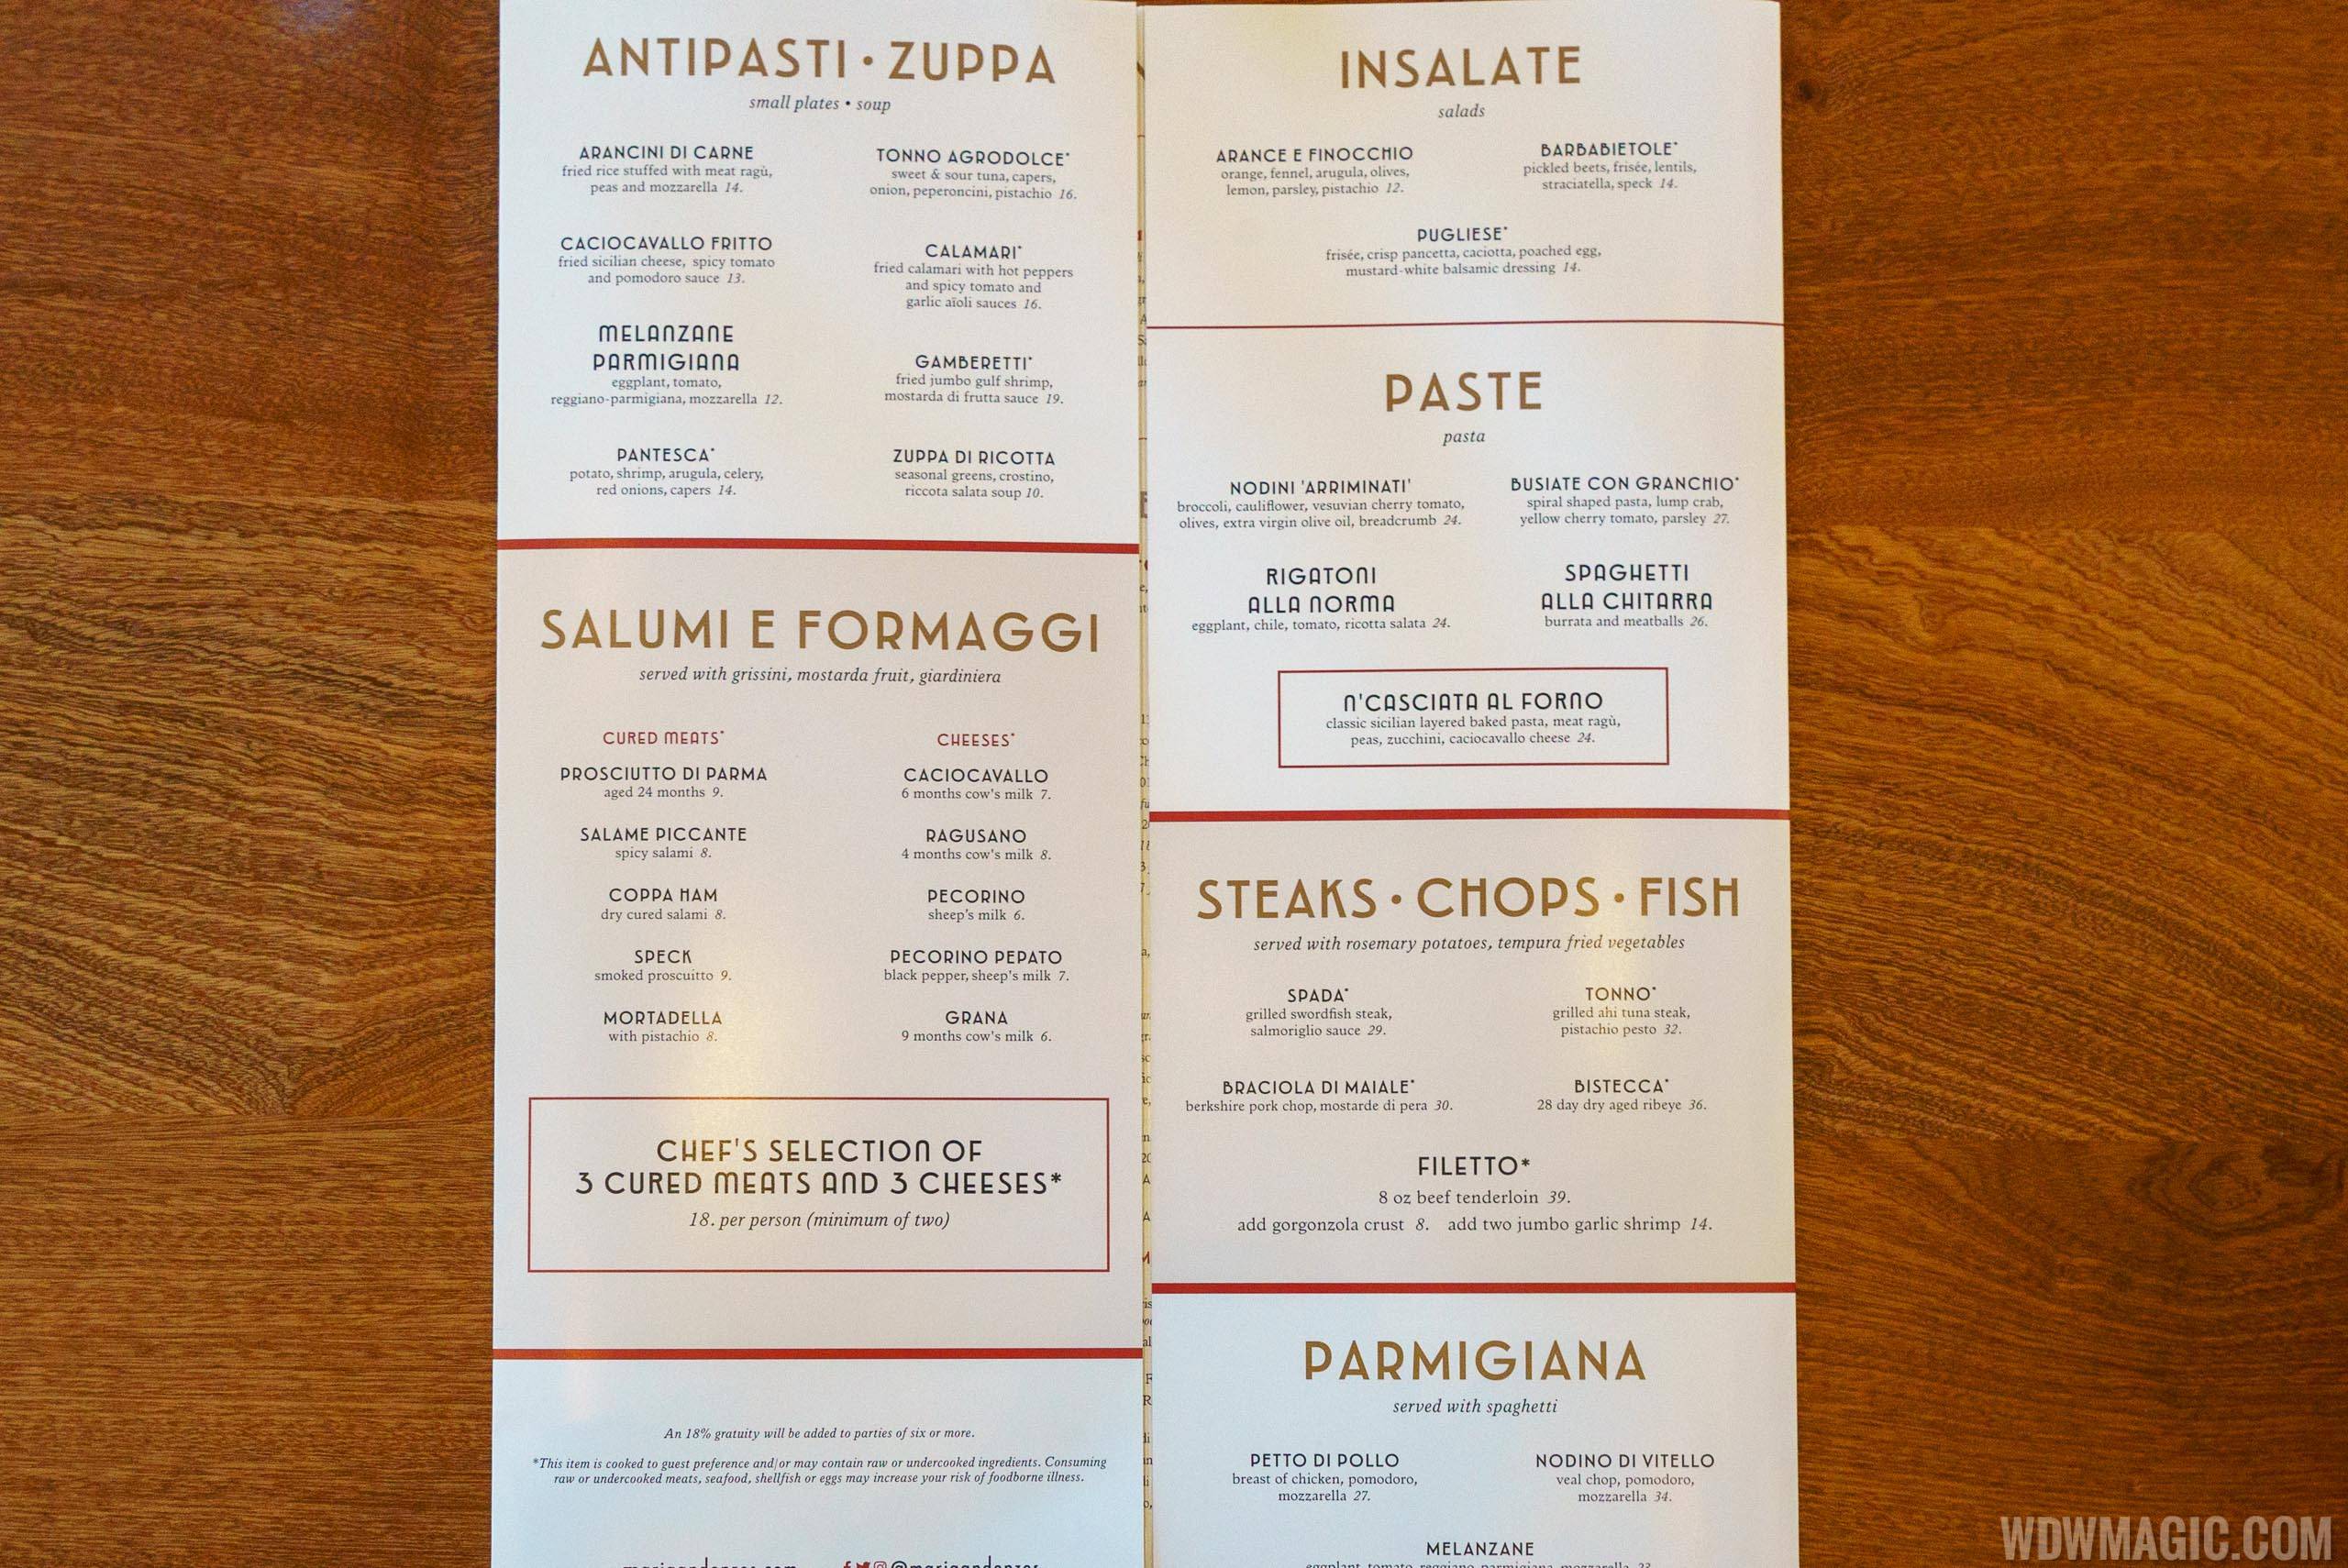 Maria and Enzo's menu